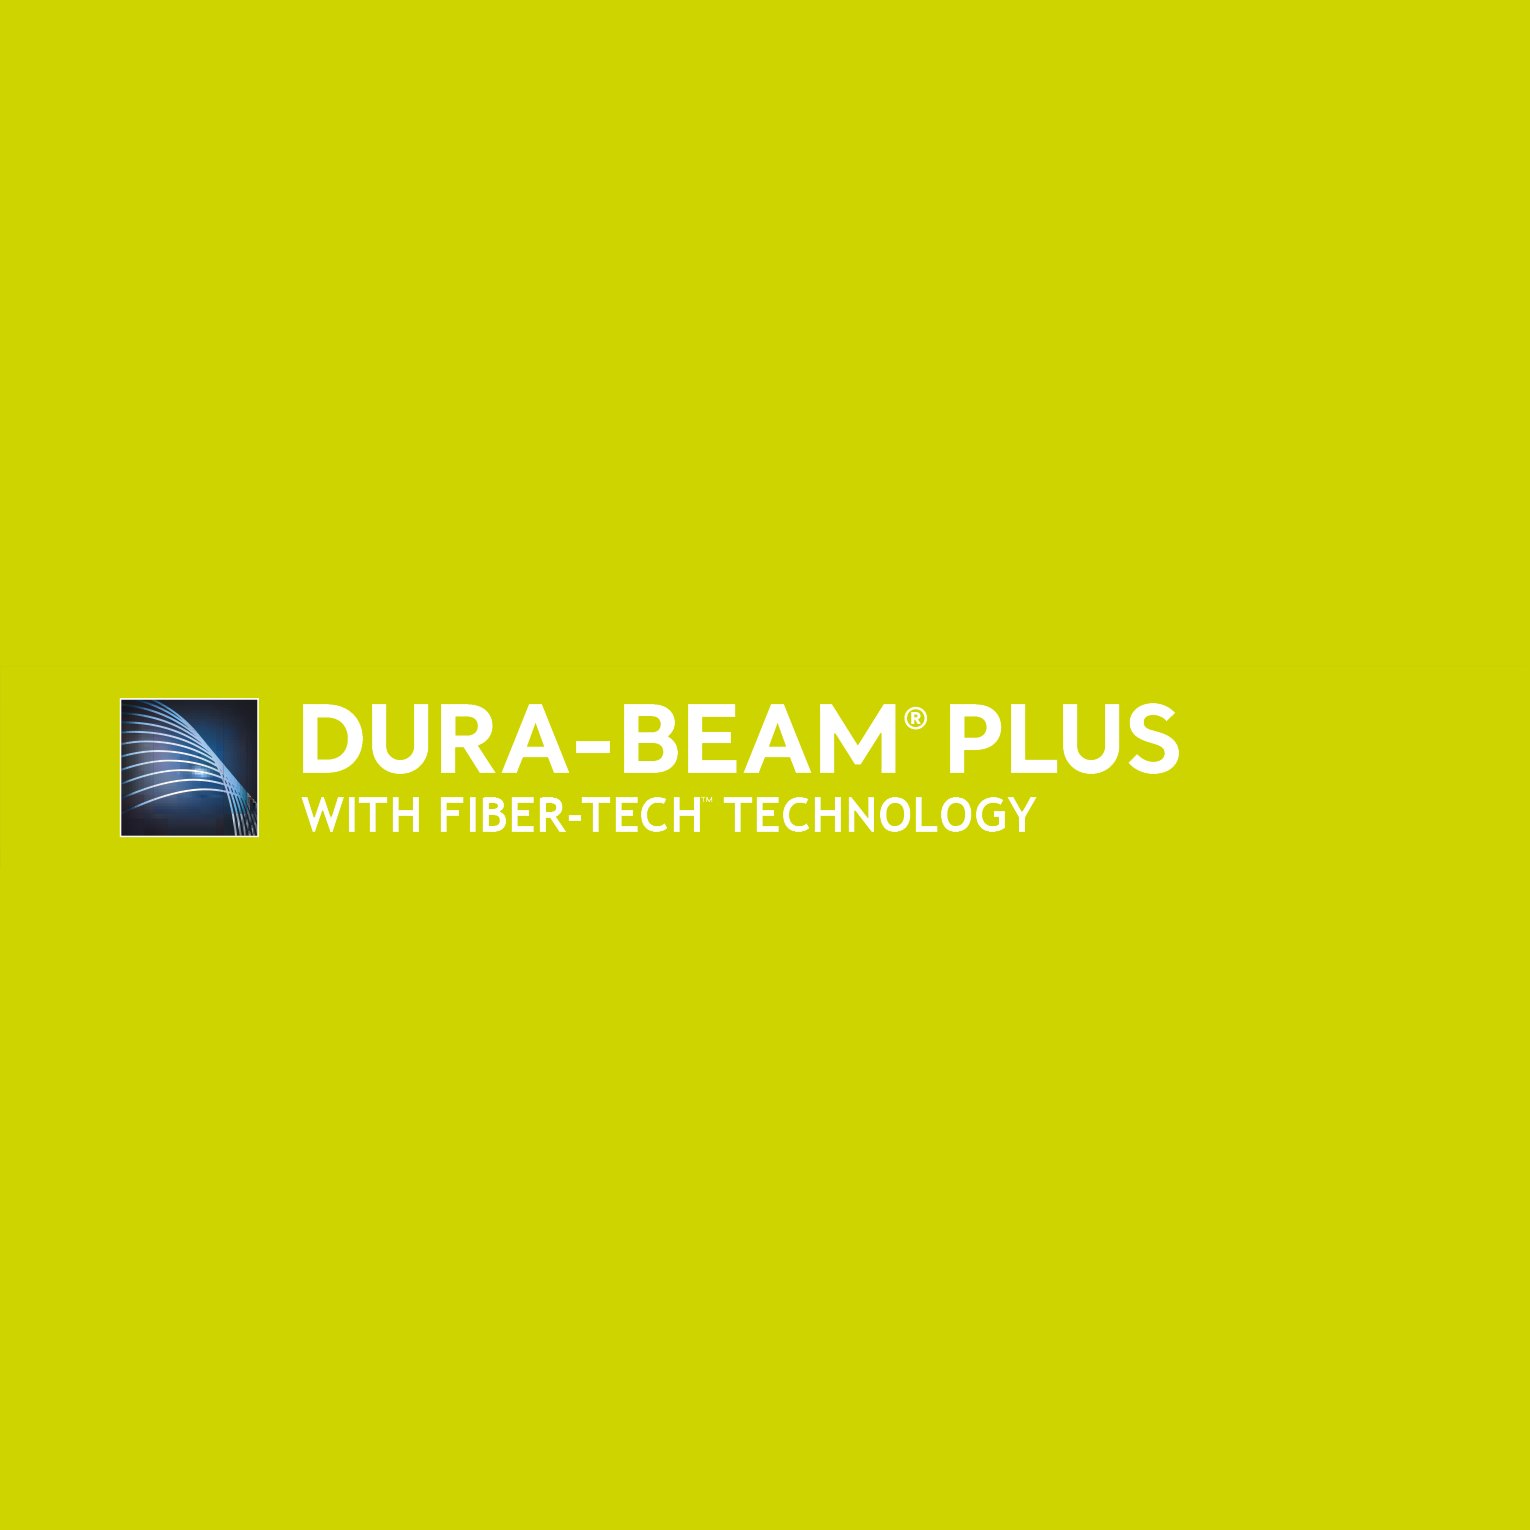 Dura-Beam Plus